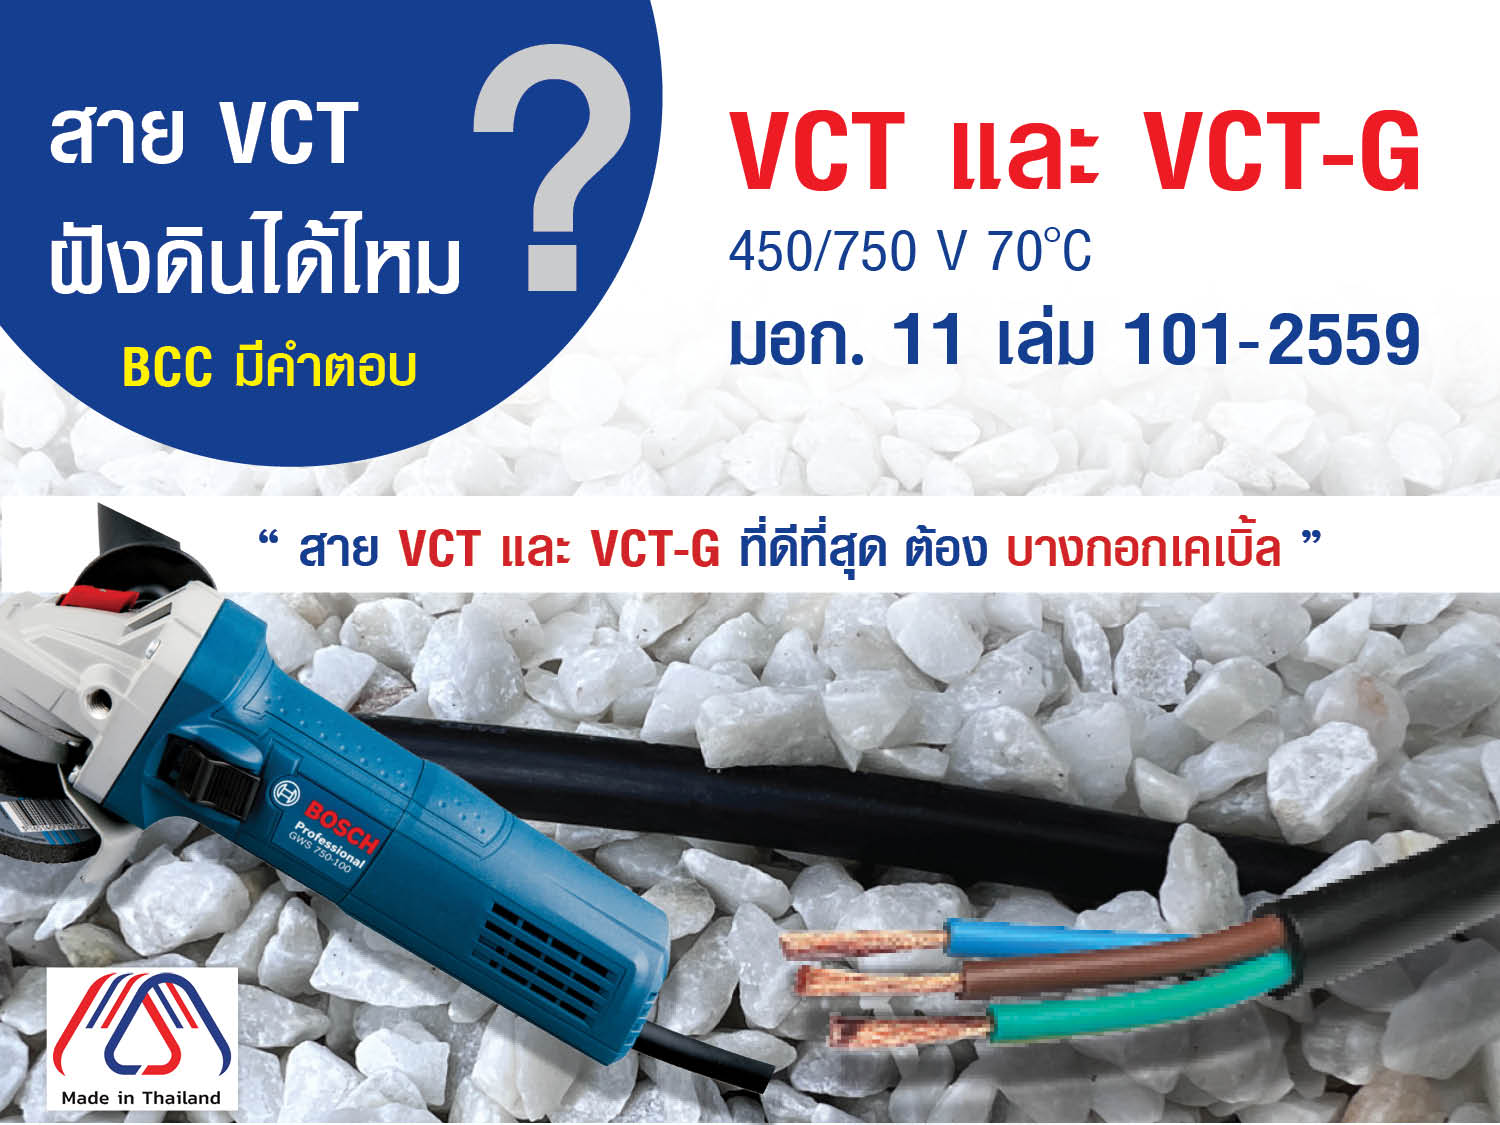 สาย VCT และ VCT-G มอก 11-2559 เล่ม 101